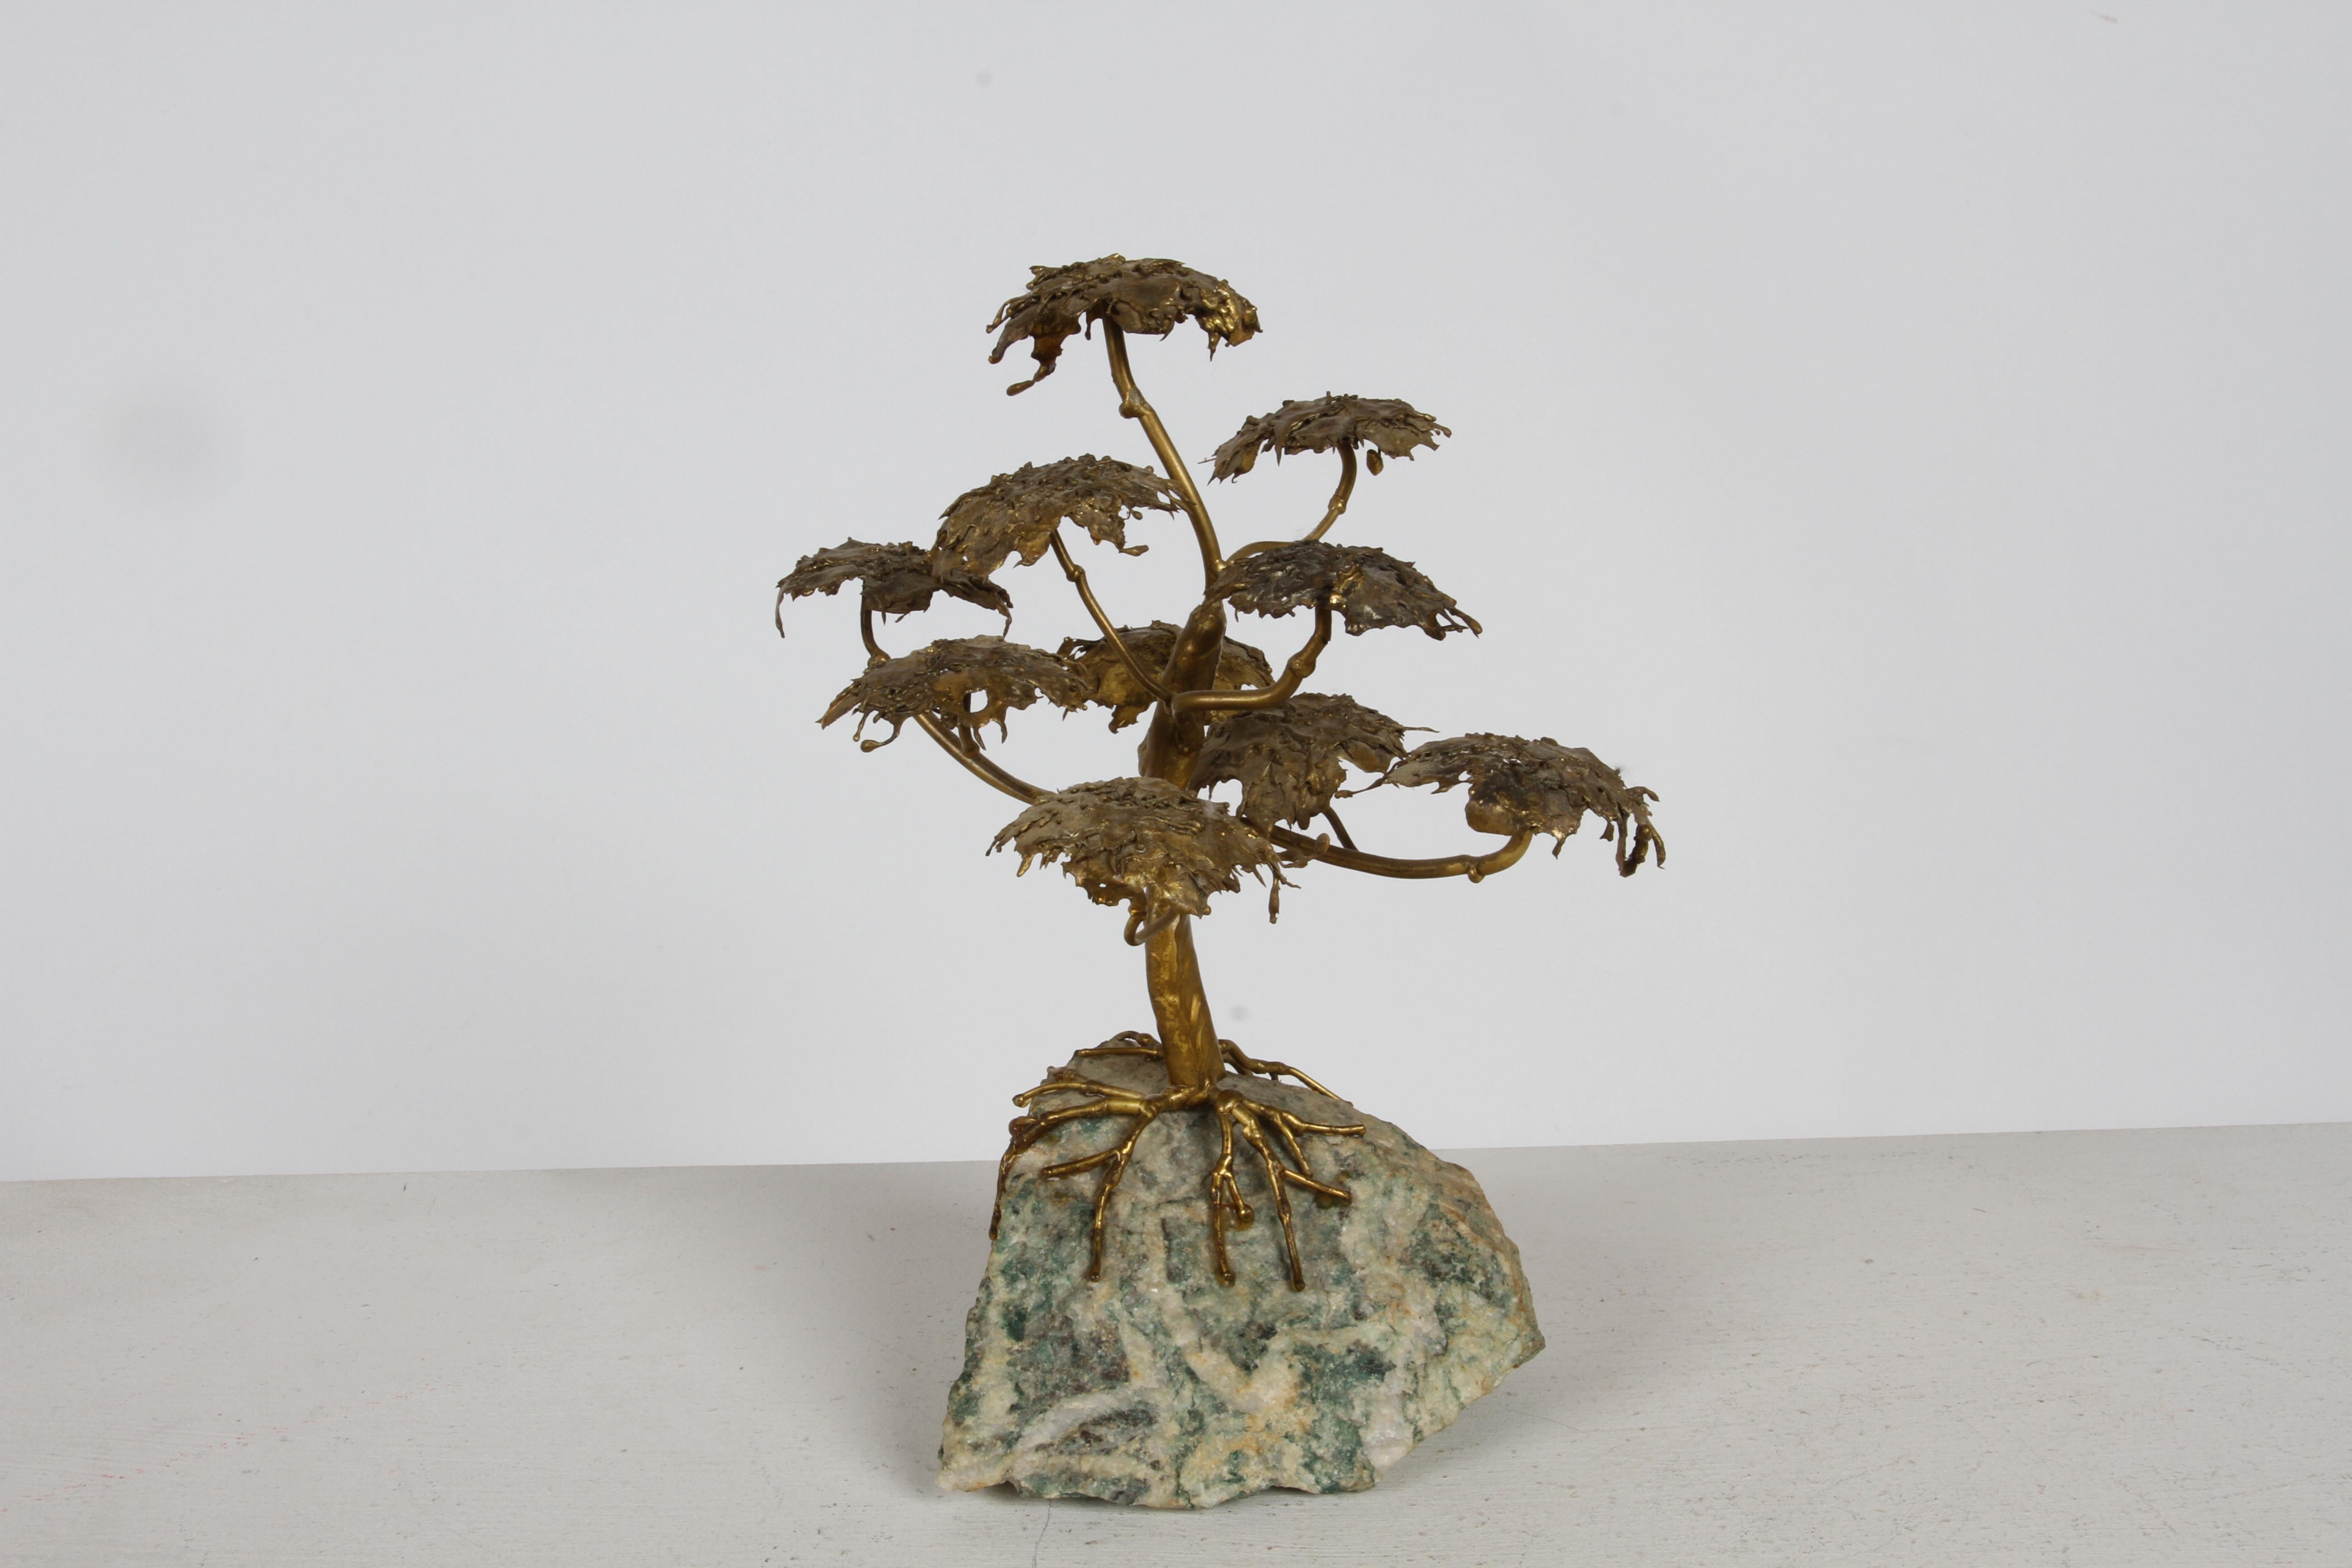 Schöne handgefertigte MCM Artisan gemacht Brutalist Bonsai Baum auf Achat Basis Tisch Skulptur. Im organisch-modernen Stil, aus gelötetem Metall mit bronze-goldener Metalloberfläche hergestellt. Die Achatbasis ist ein Baumachat, siehe unten seine